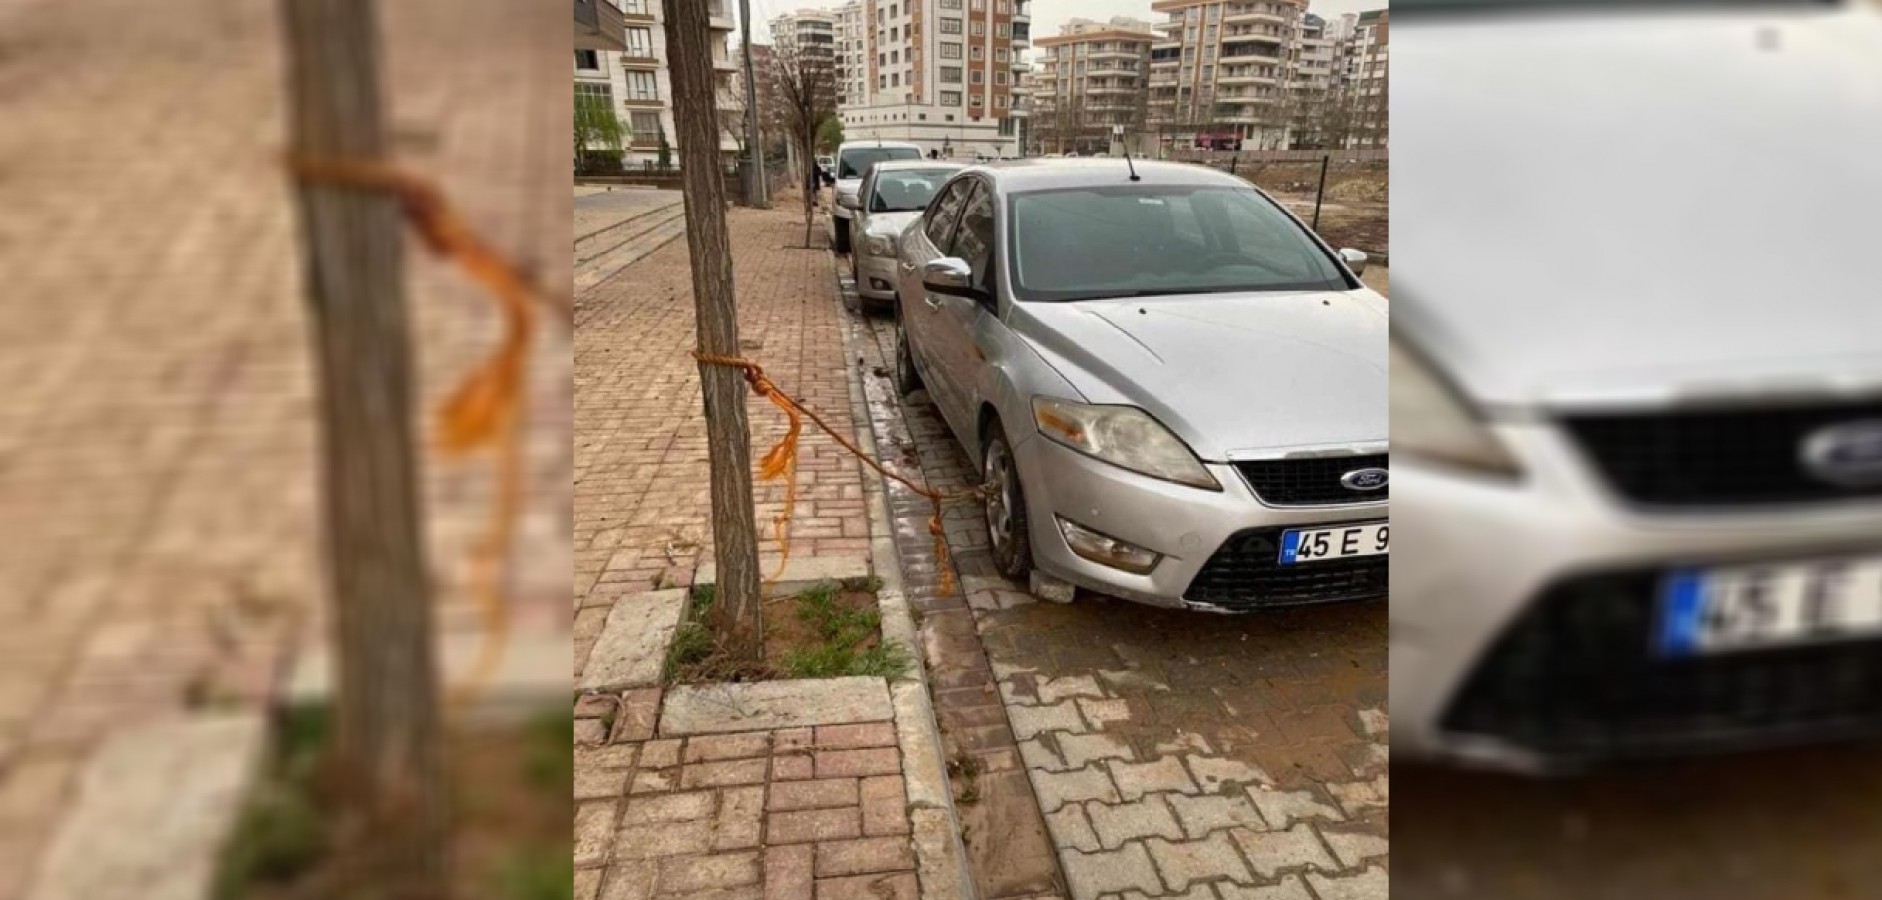 Urfa'da sel önlemi! Arabasını ağaca bağladı;